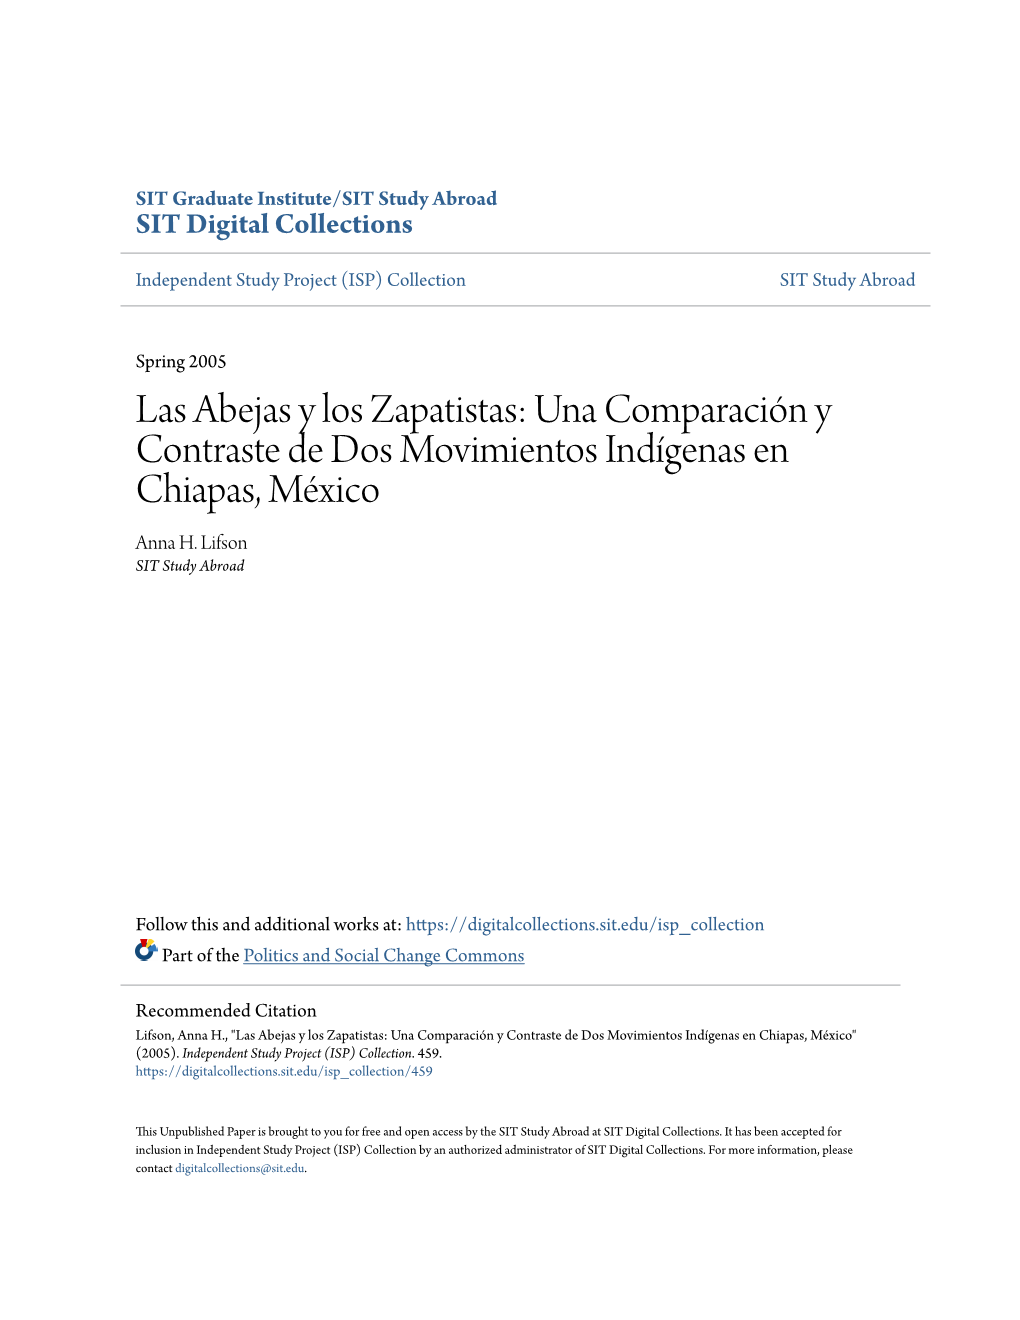 Las Abejas Y Los Zapatistas: Una Comparación Y Contraste De Dos Movimientos Indígenas En Chiapas, México Anna H